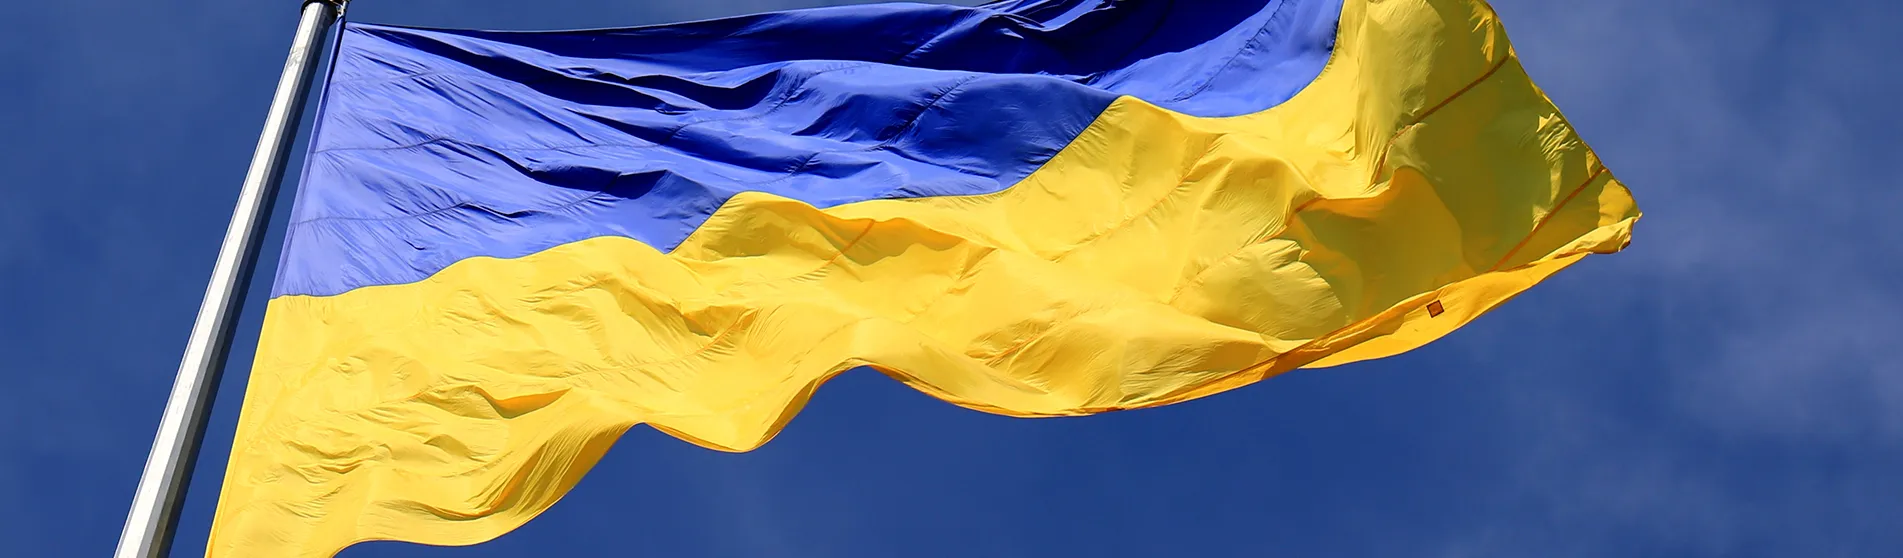 Ukraine flag image for expert series banner sized